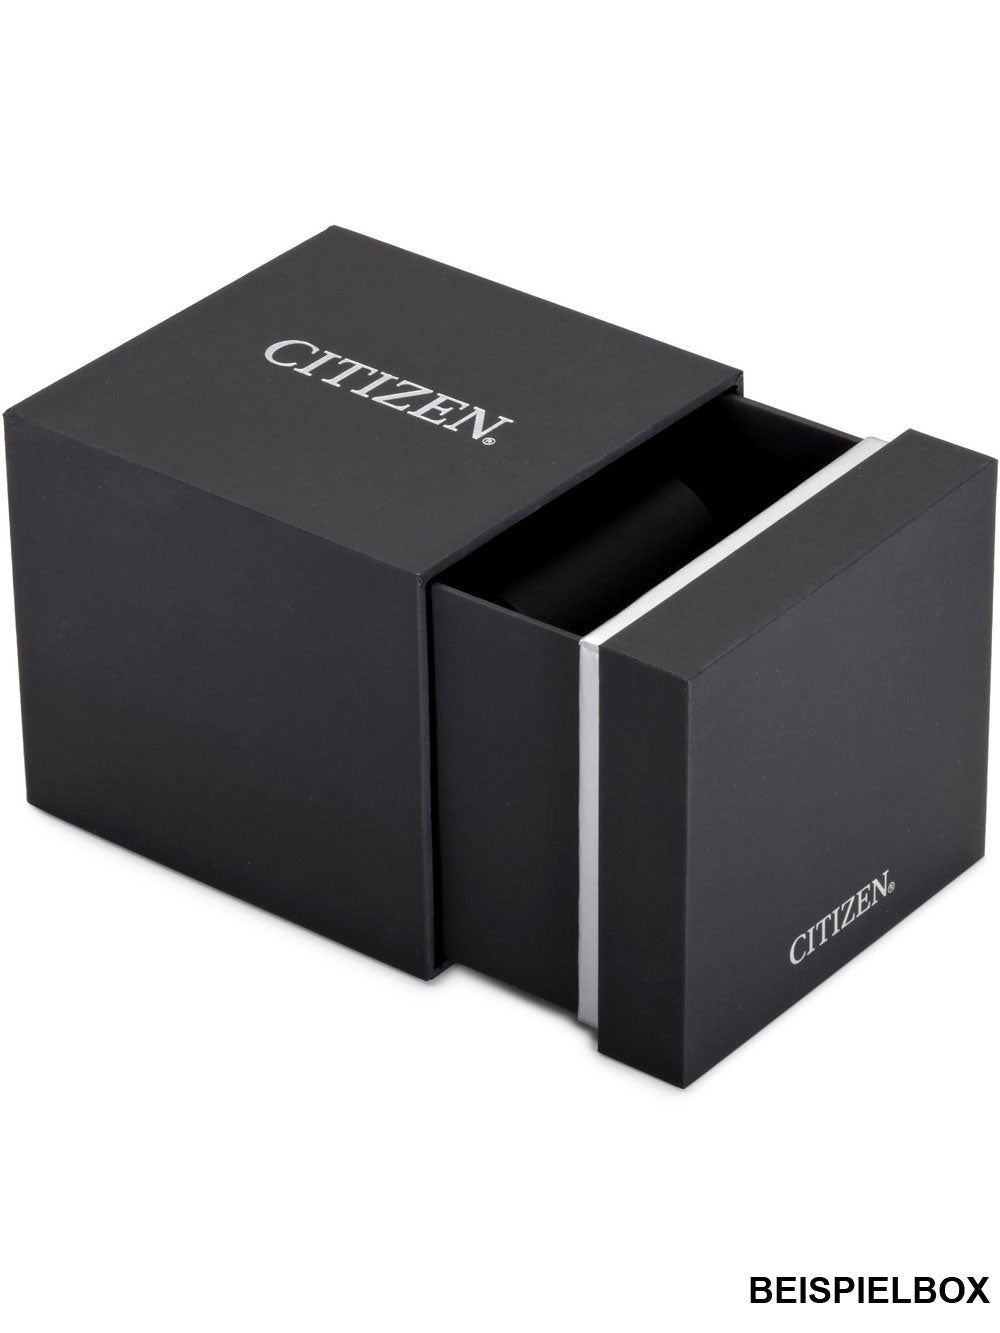 Citizen EM0724-17Y titanium Ladies 30mm 5ATM